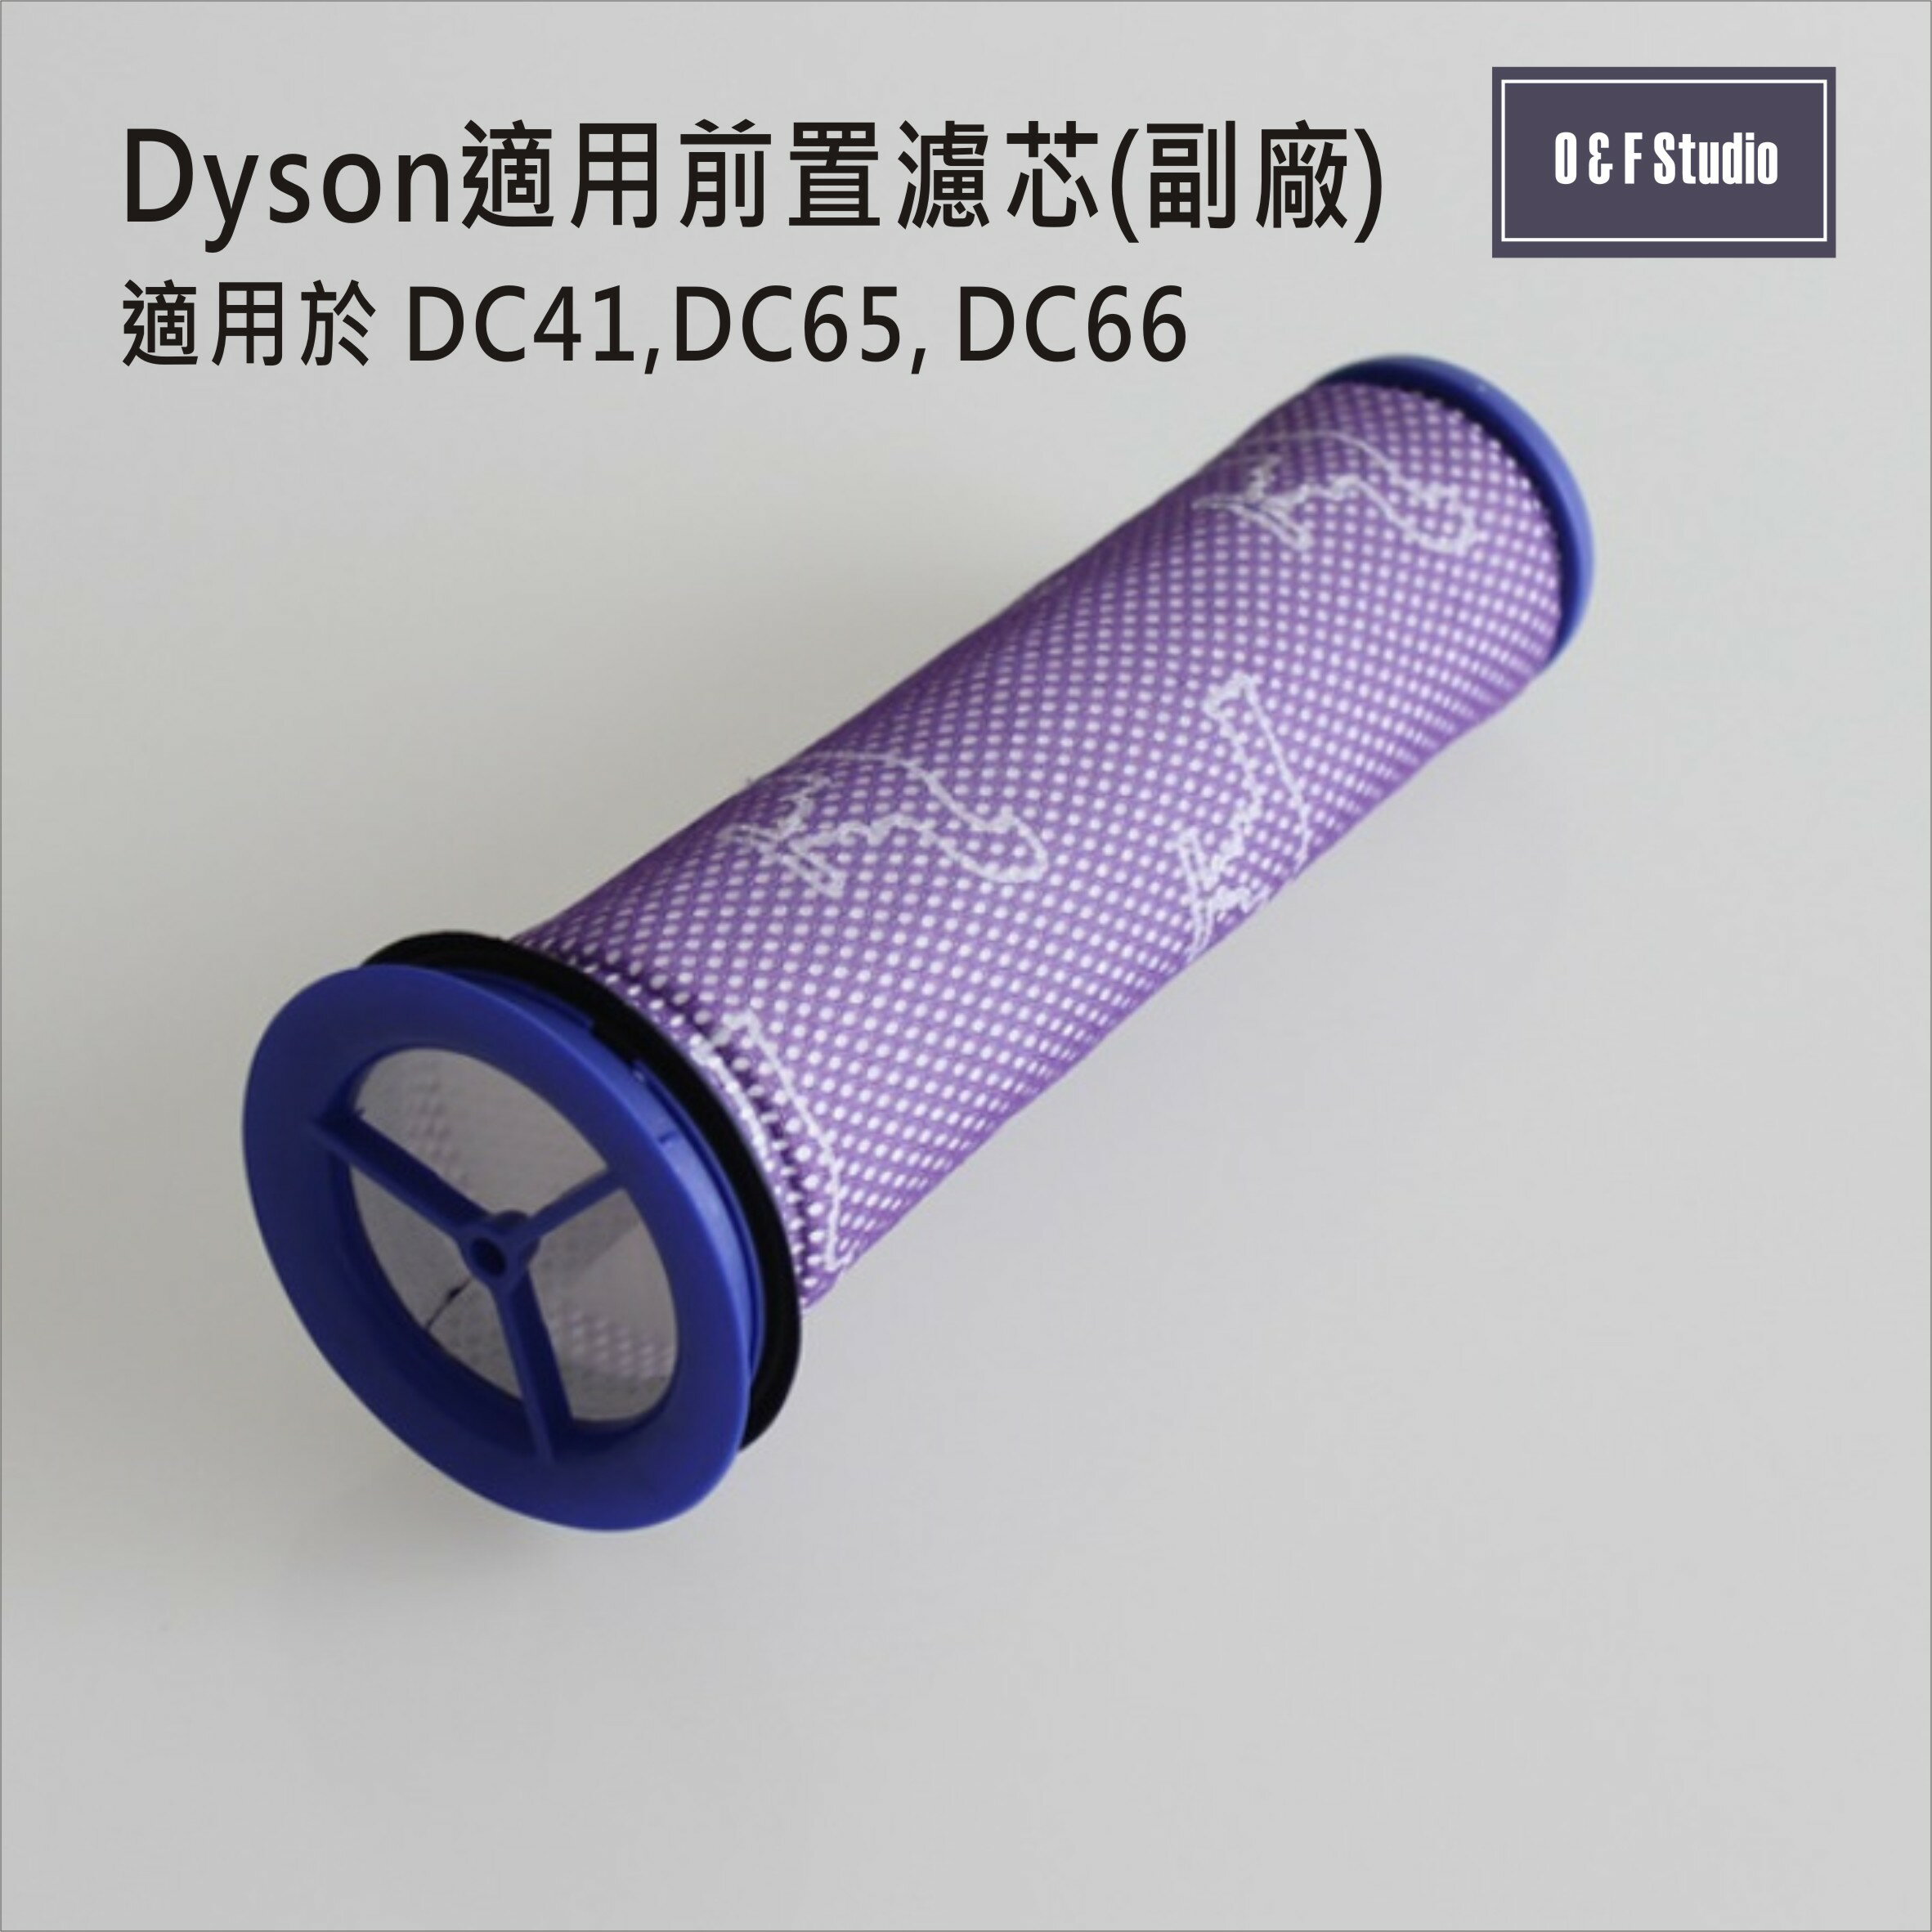 吸塵器濾芯 Dyson戴森 (副廠)台灣現貨 DC41/DC65/DC66前置濾芯【居家達人DS017】